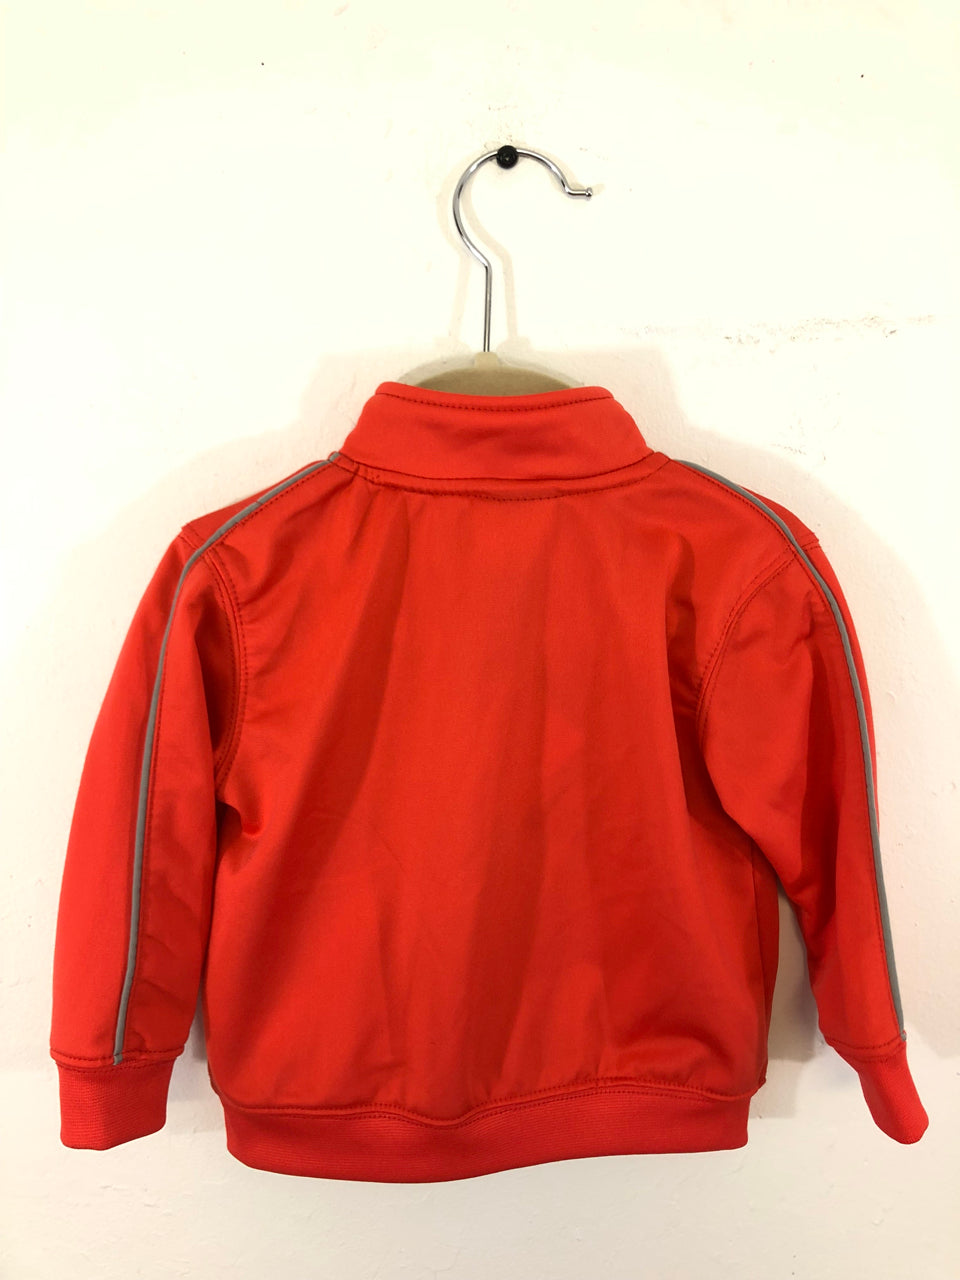 Kids' Red Nike Jacket